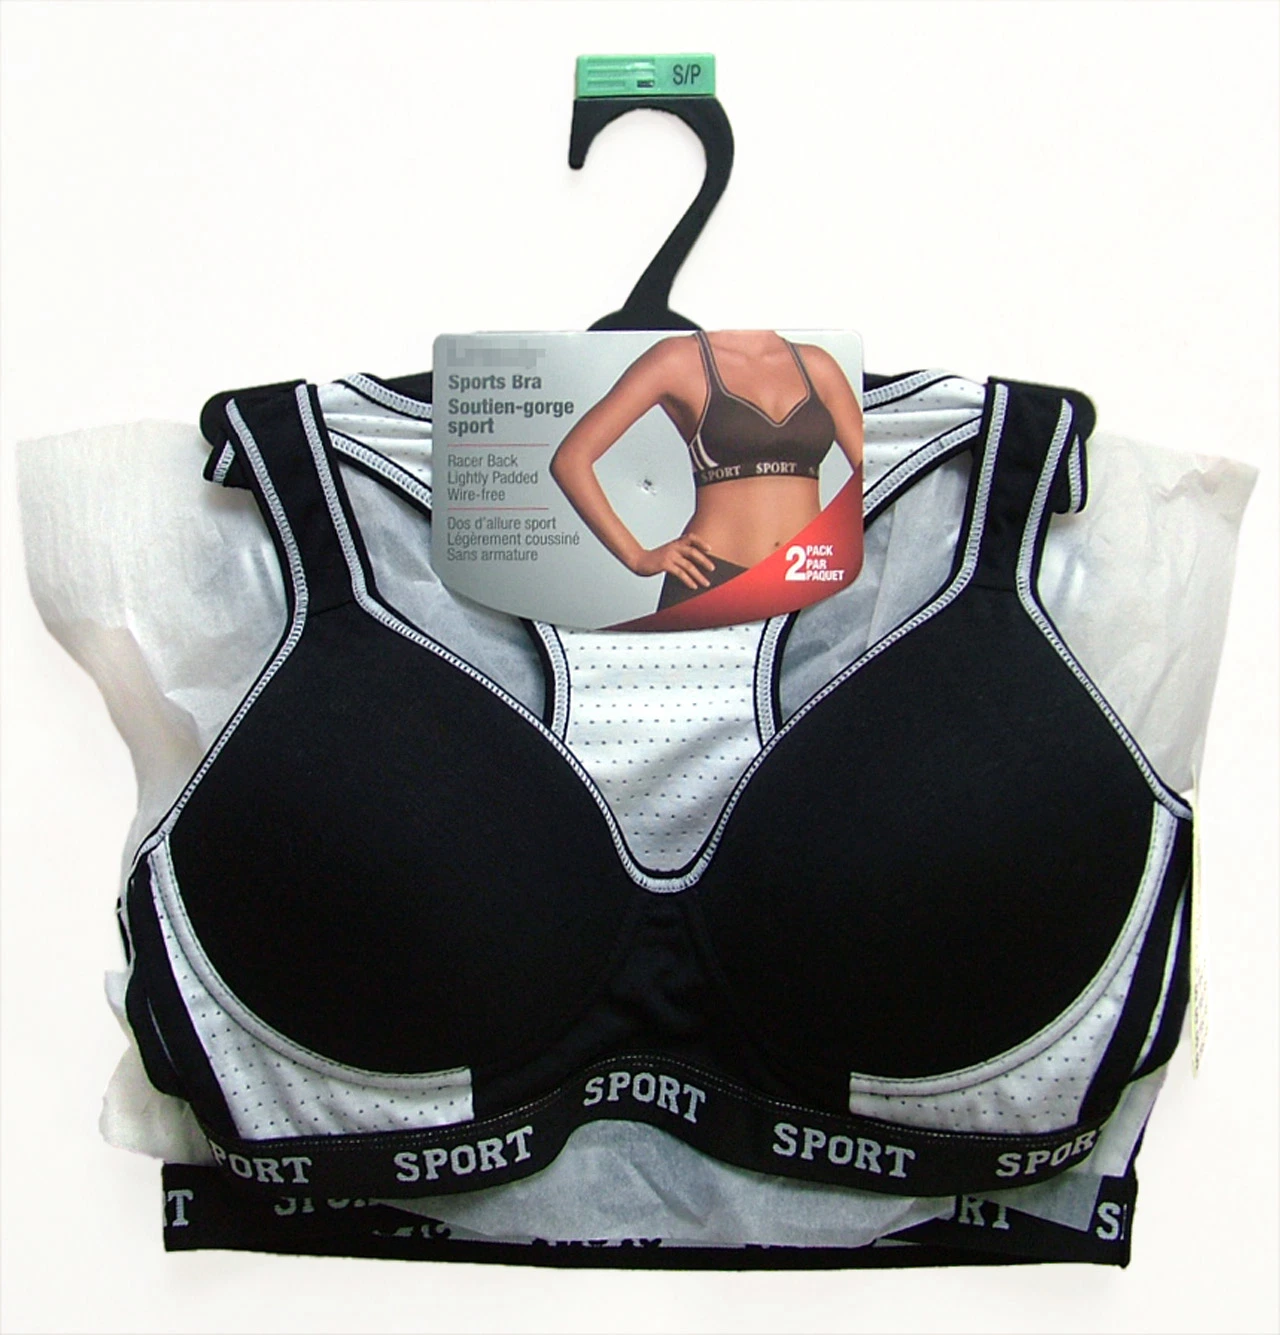 ملابس داخلية رياضية اجمع حمالة الصدر الرياضية بدون تراثس